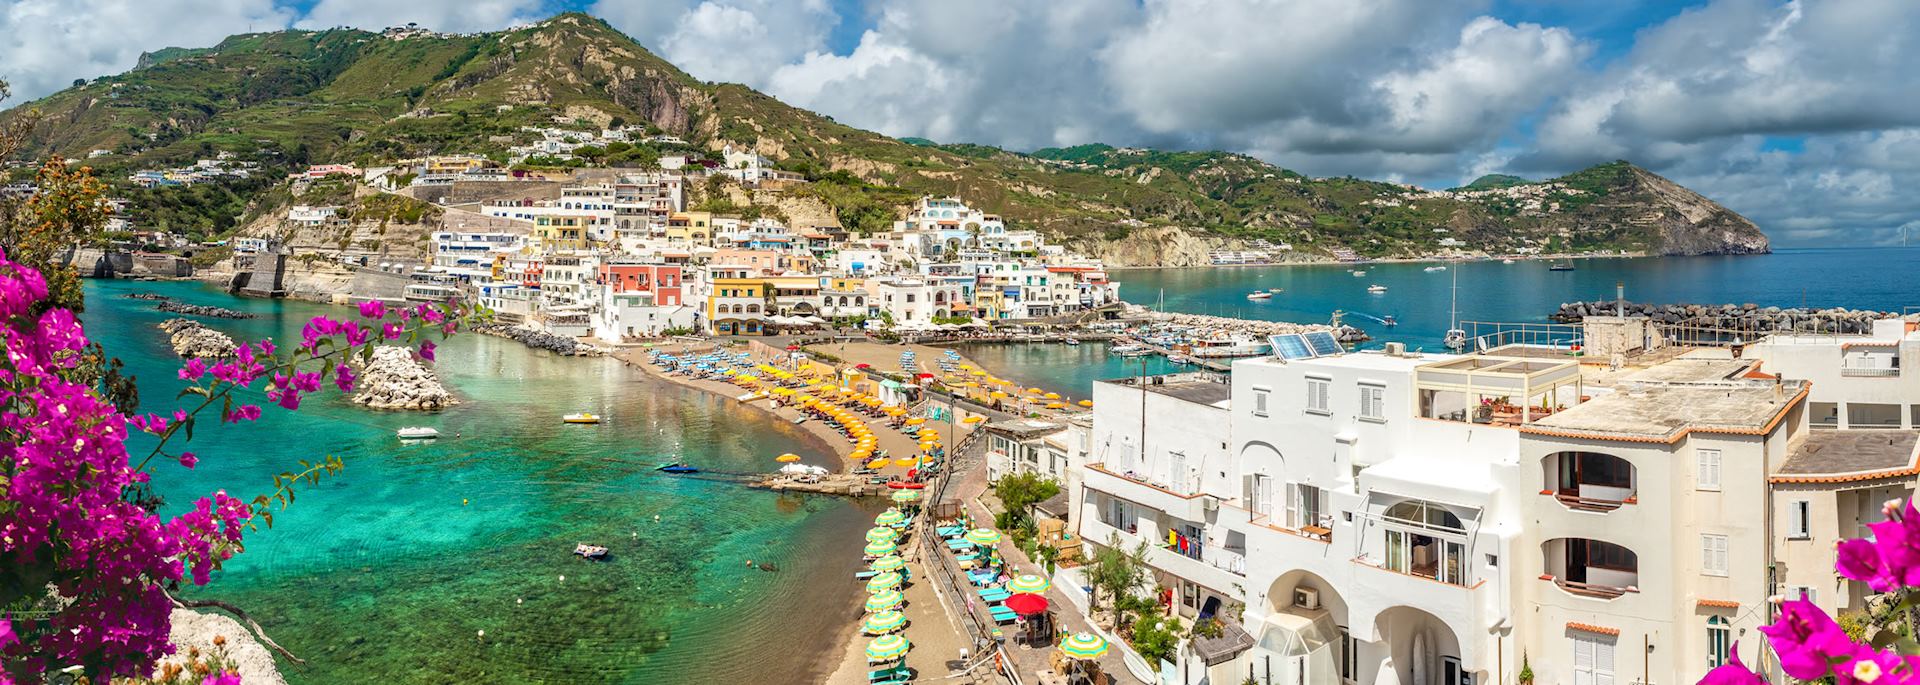 Coastal scenery of Ischia